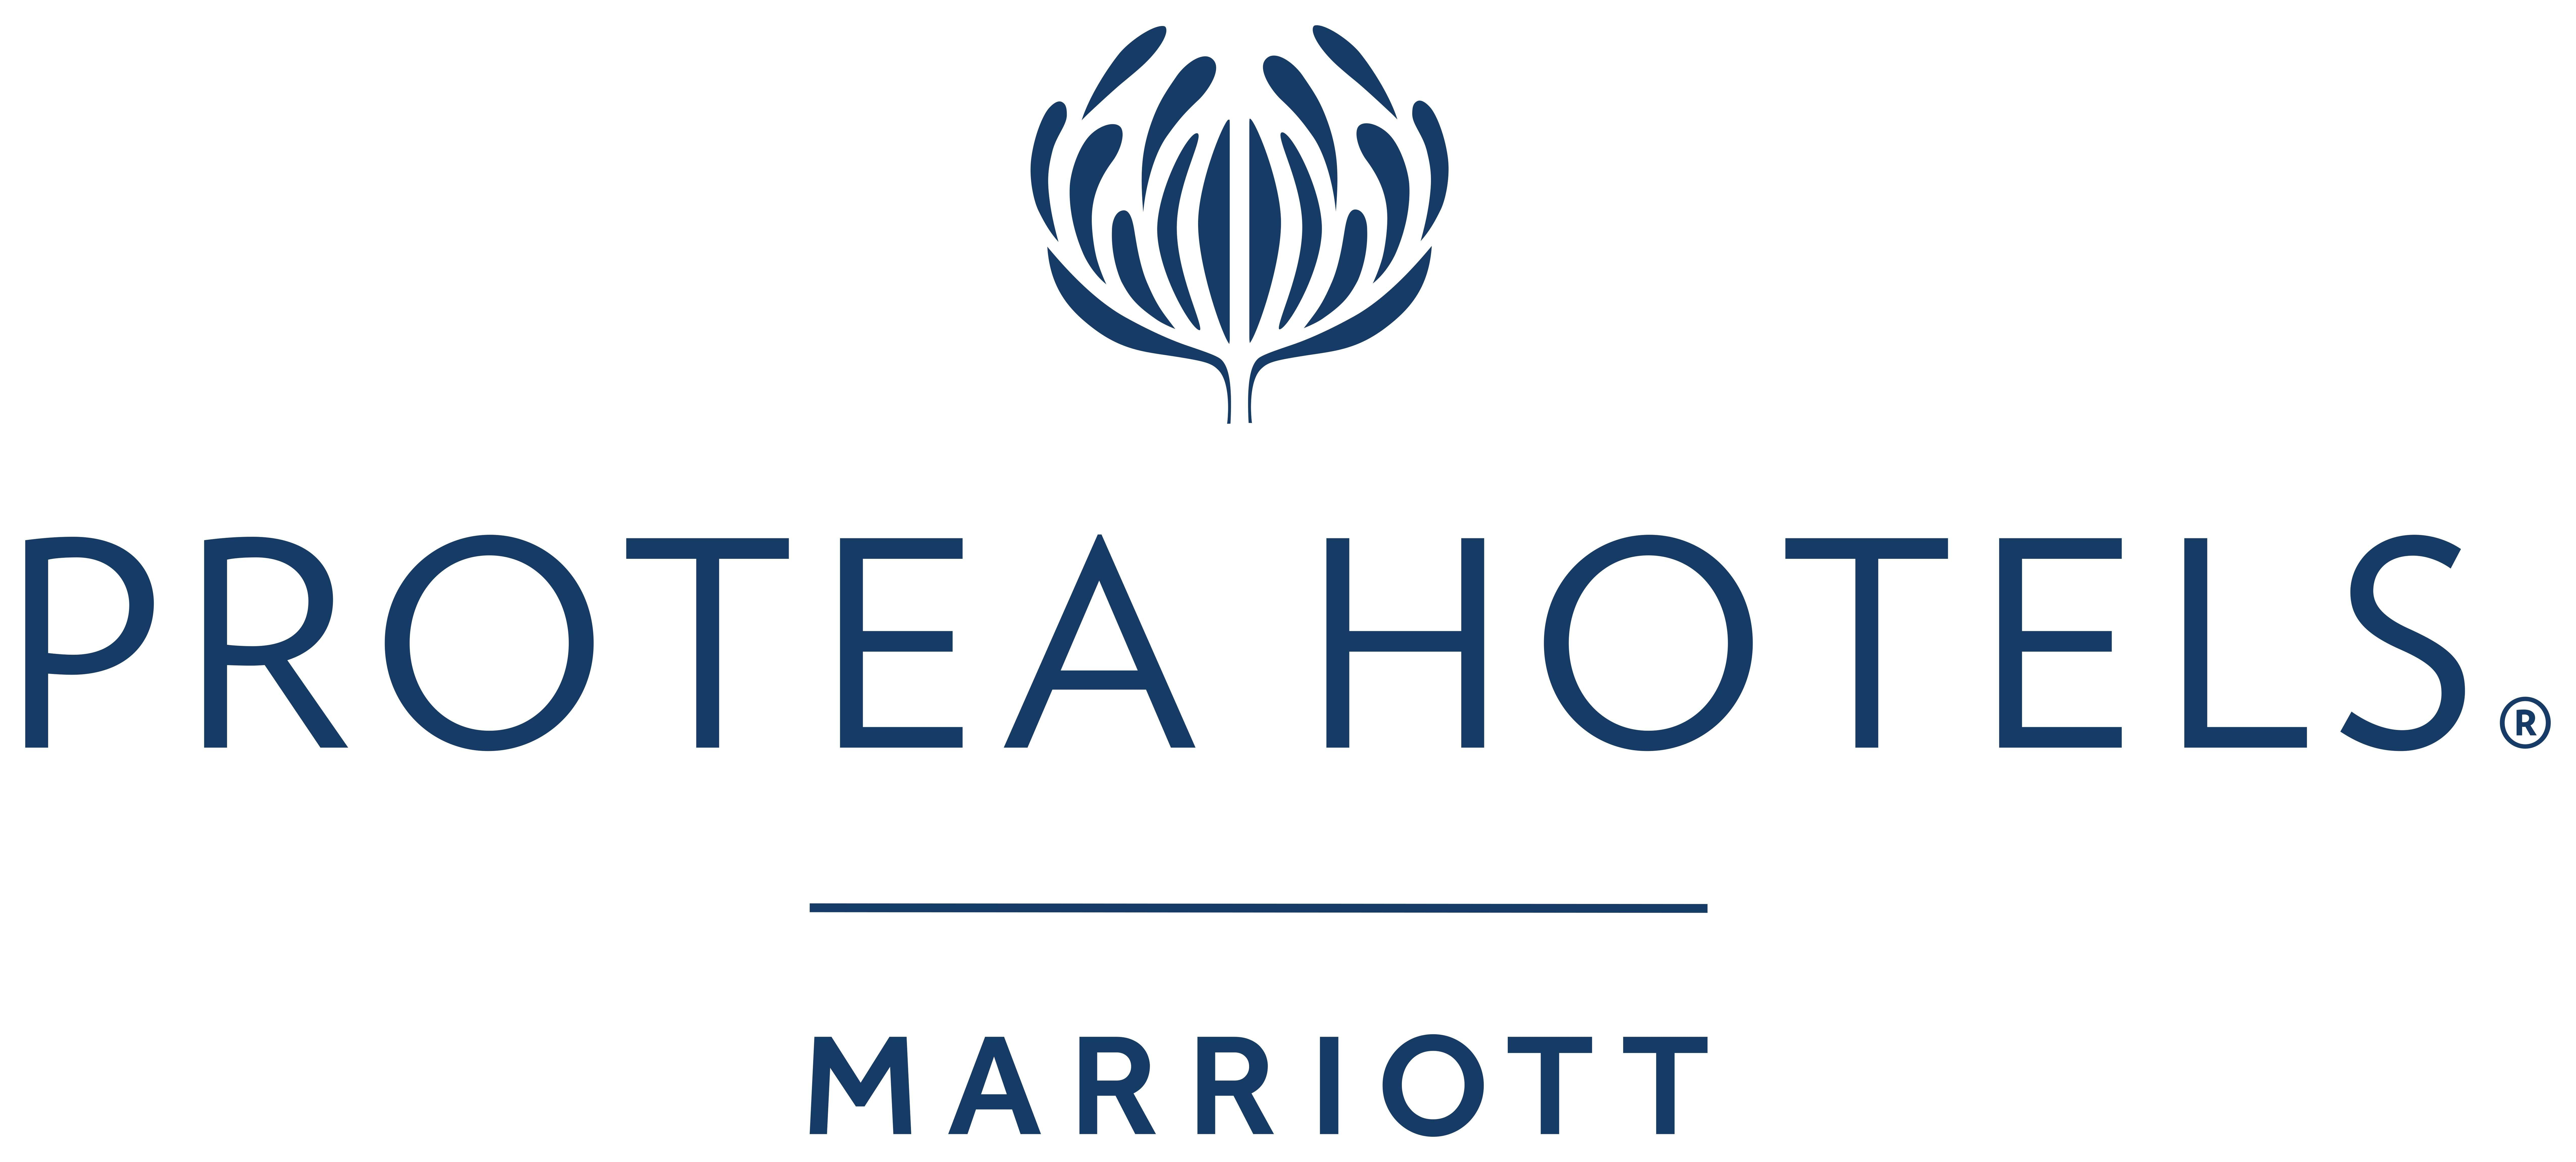 Hotel Brand Logo - Brand Photos & Logos | Marriott News Center